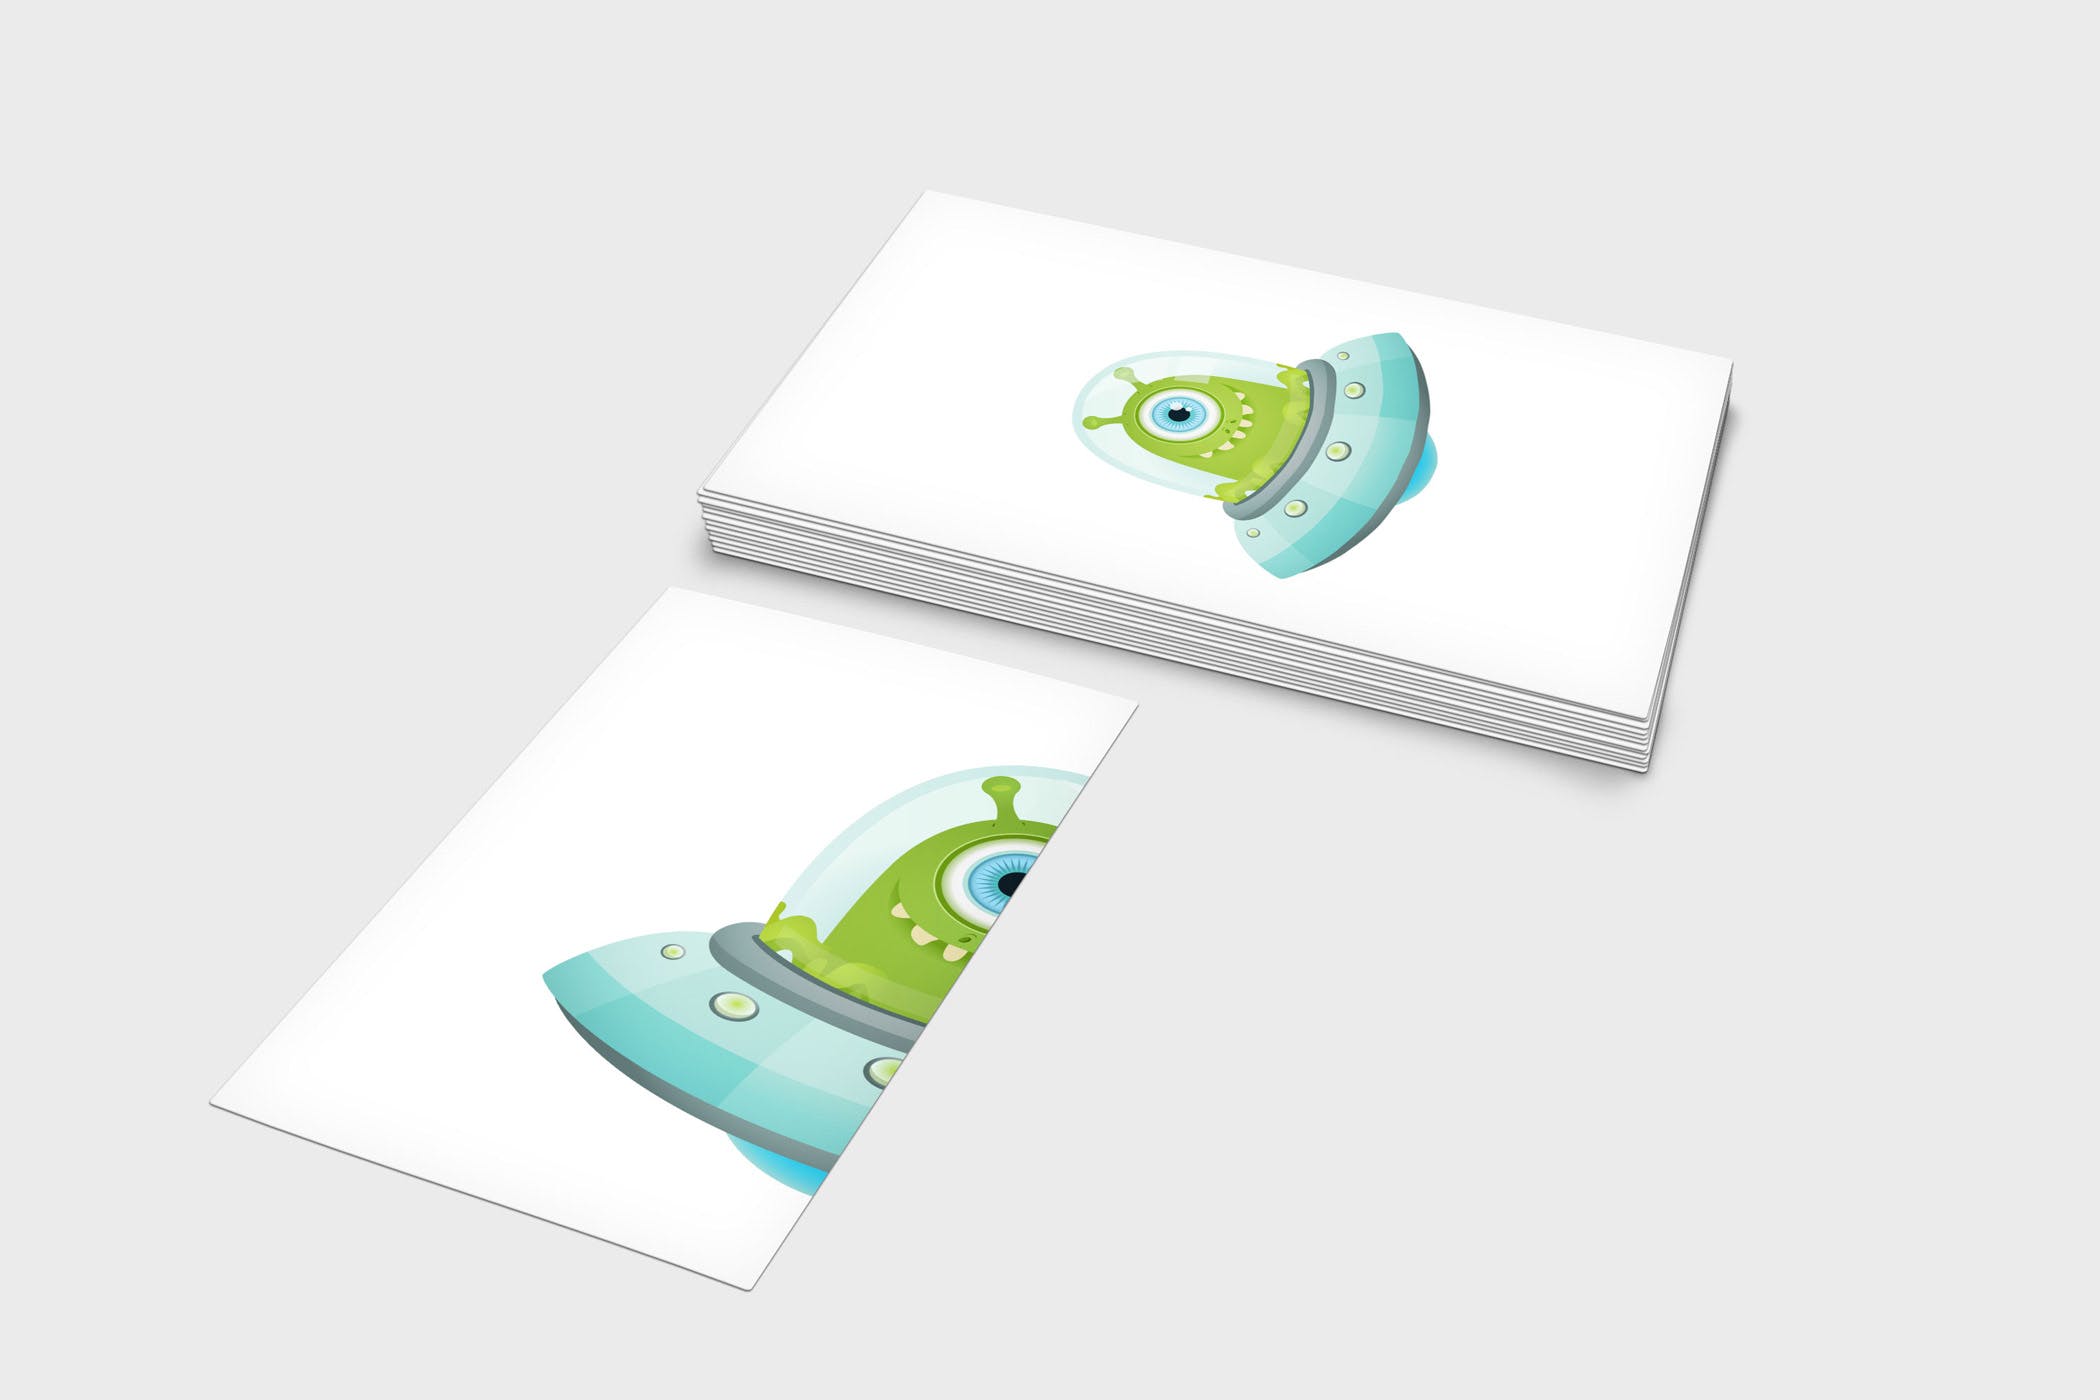 企业名片设计效果图展示样机蚂蚁素材精选模板 4 Business Card Mock-Up Template插图(3)